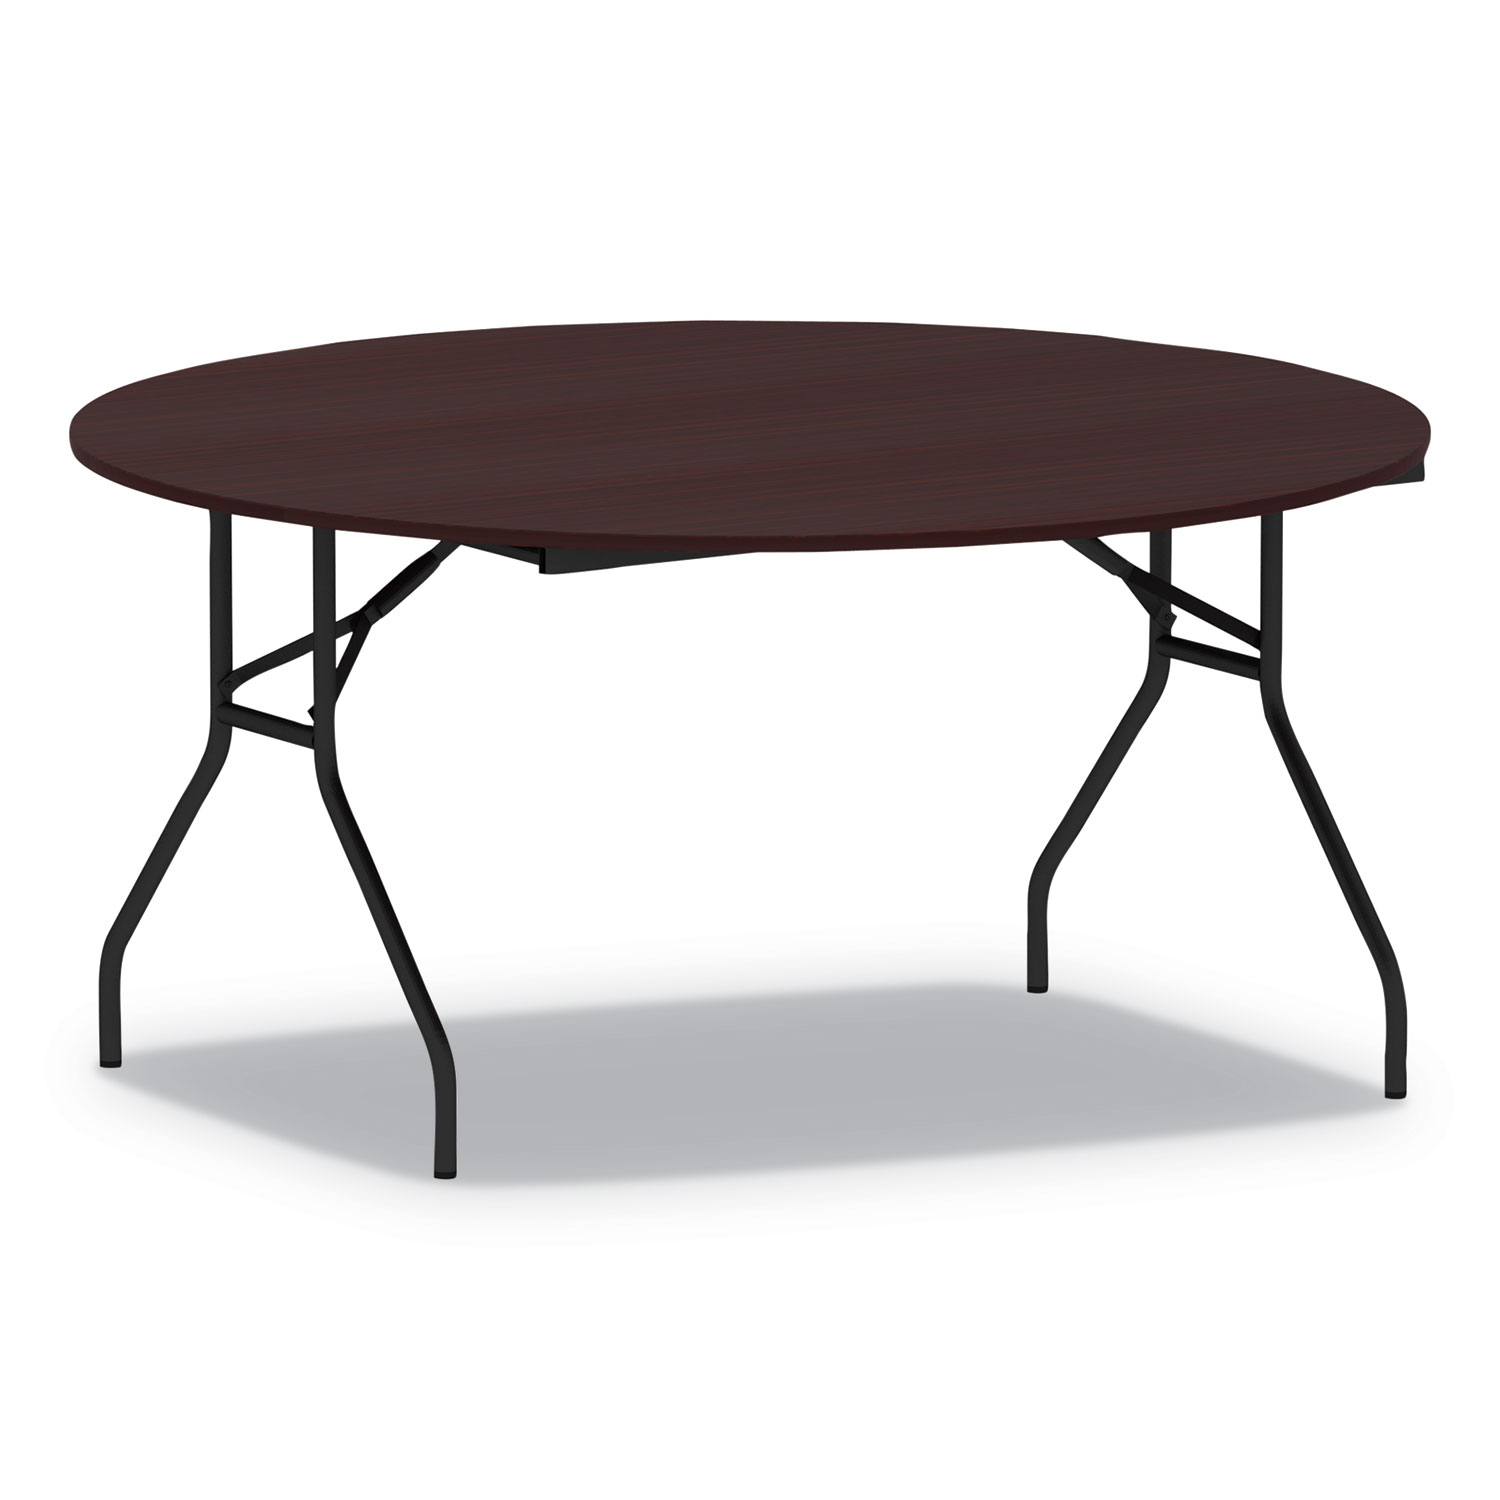 Round Wood Folding Table, 59 Dia x 29h, Mahogany